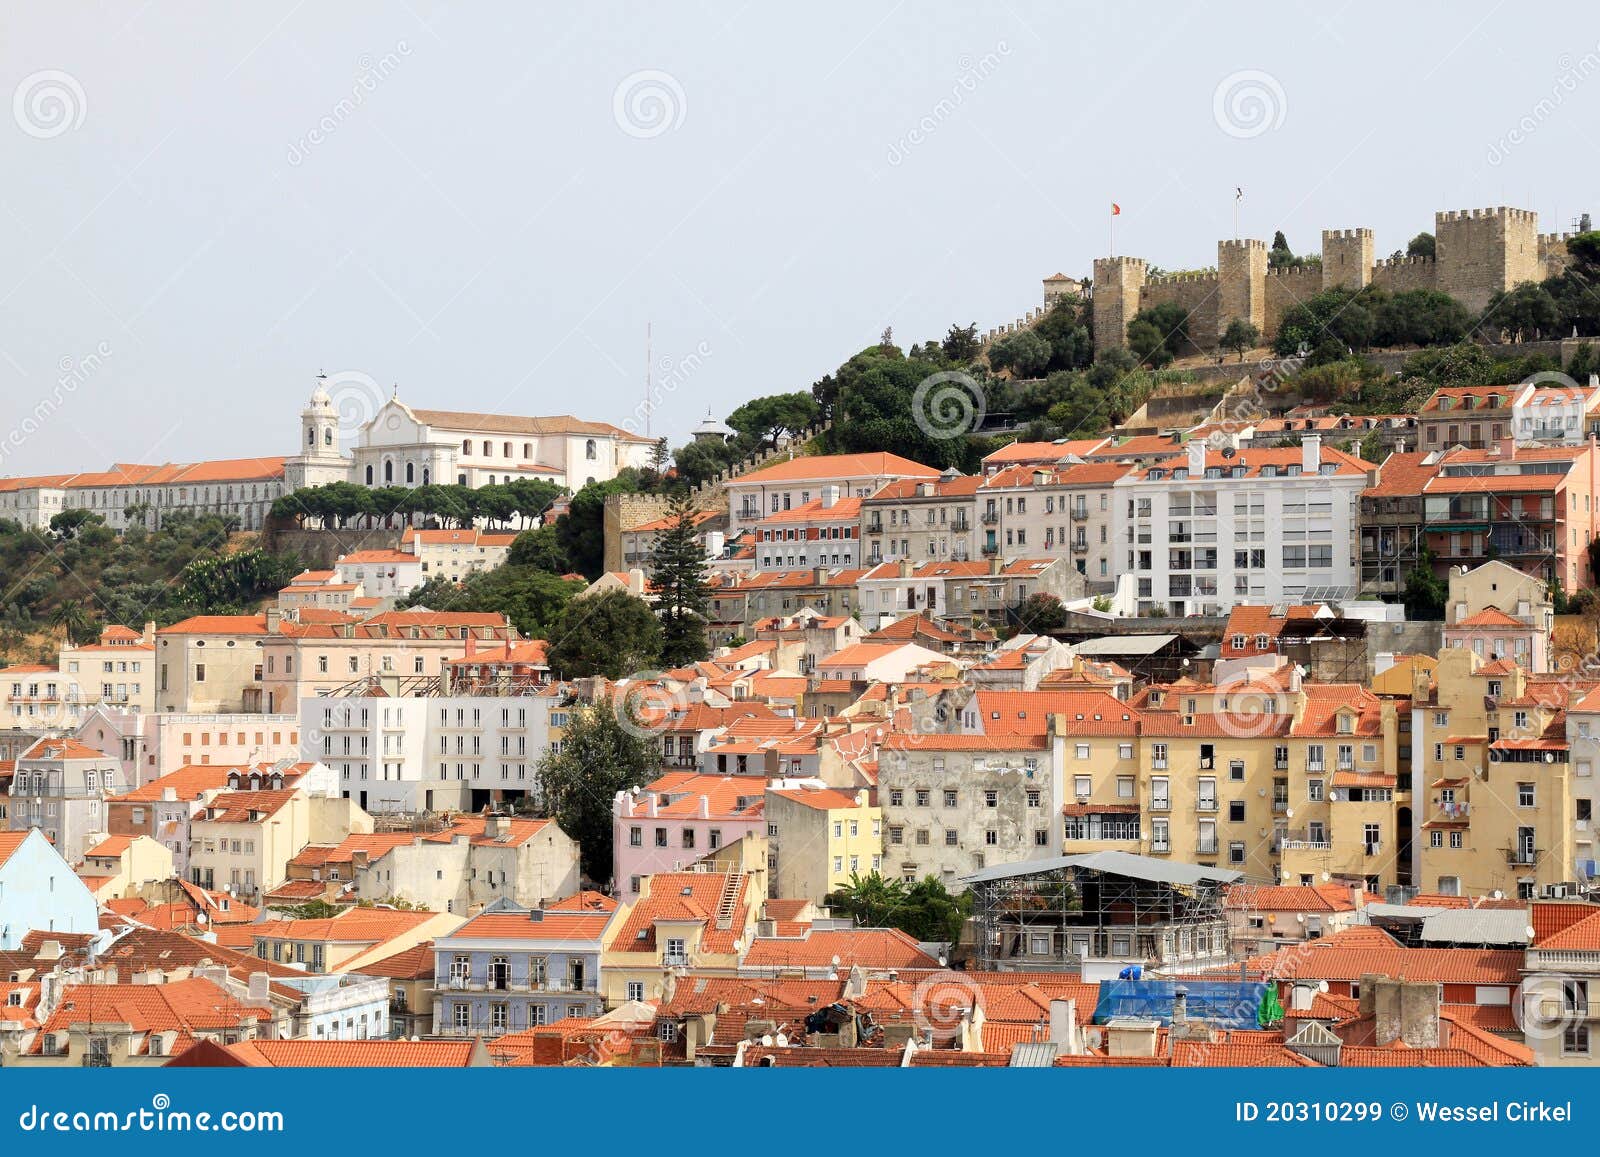 lisbon and castle of sao jorge, portugal